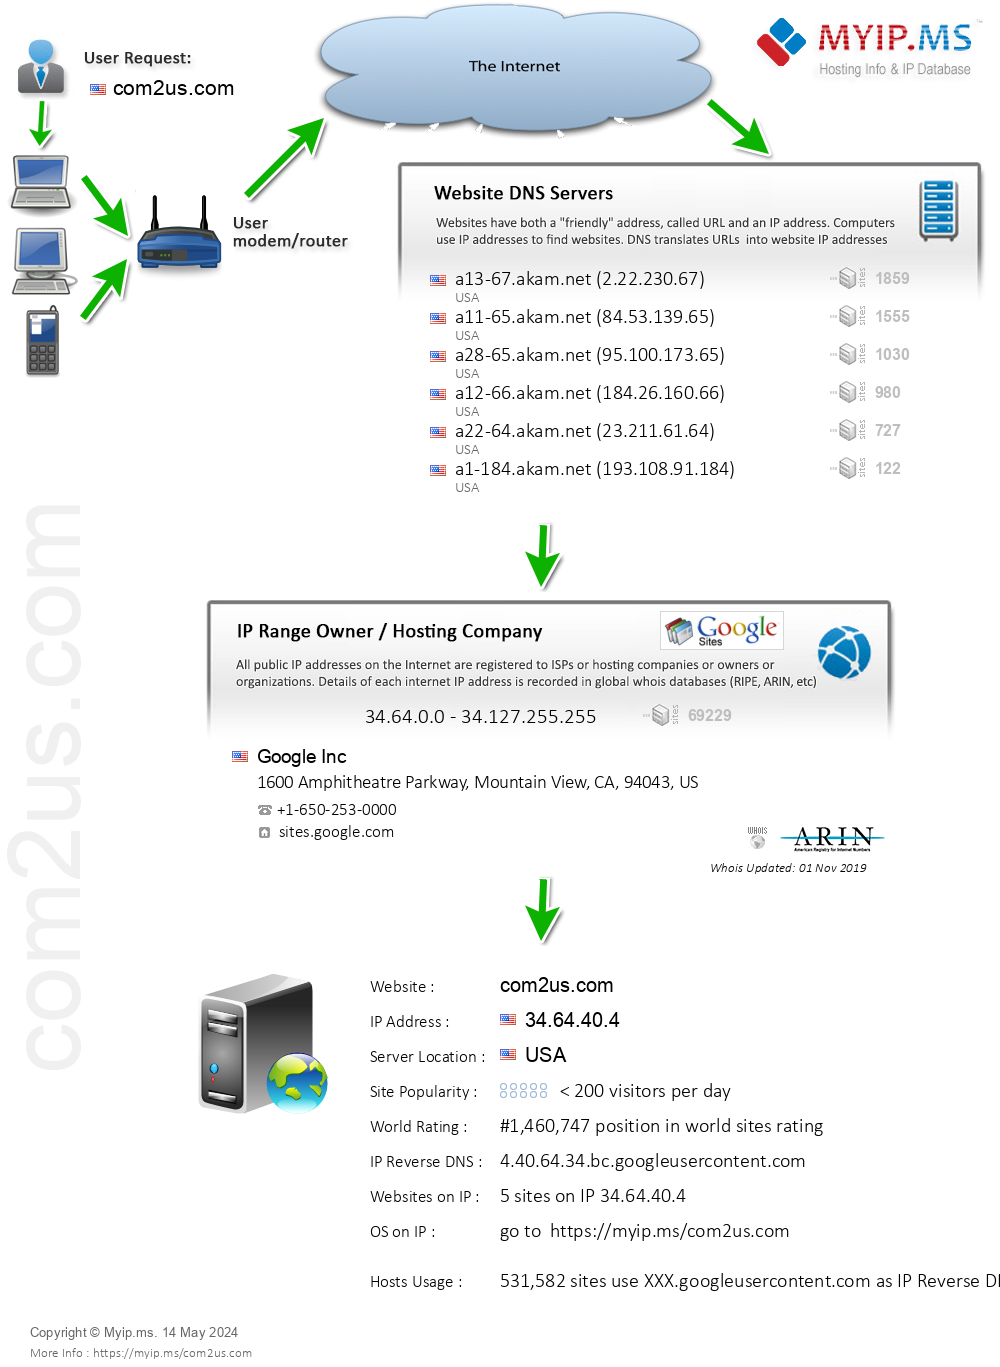 Com2us.com - Website Hosting Visual IP Diagram